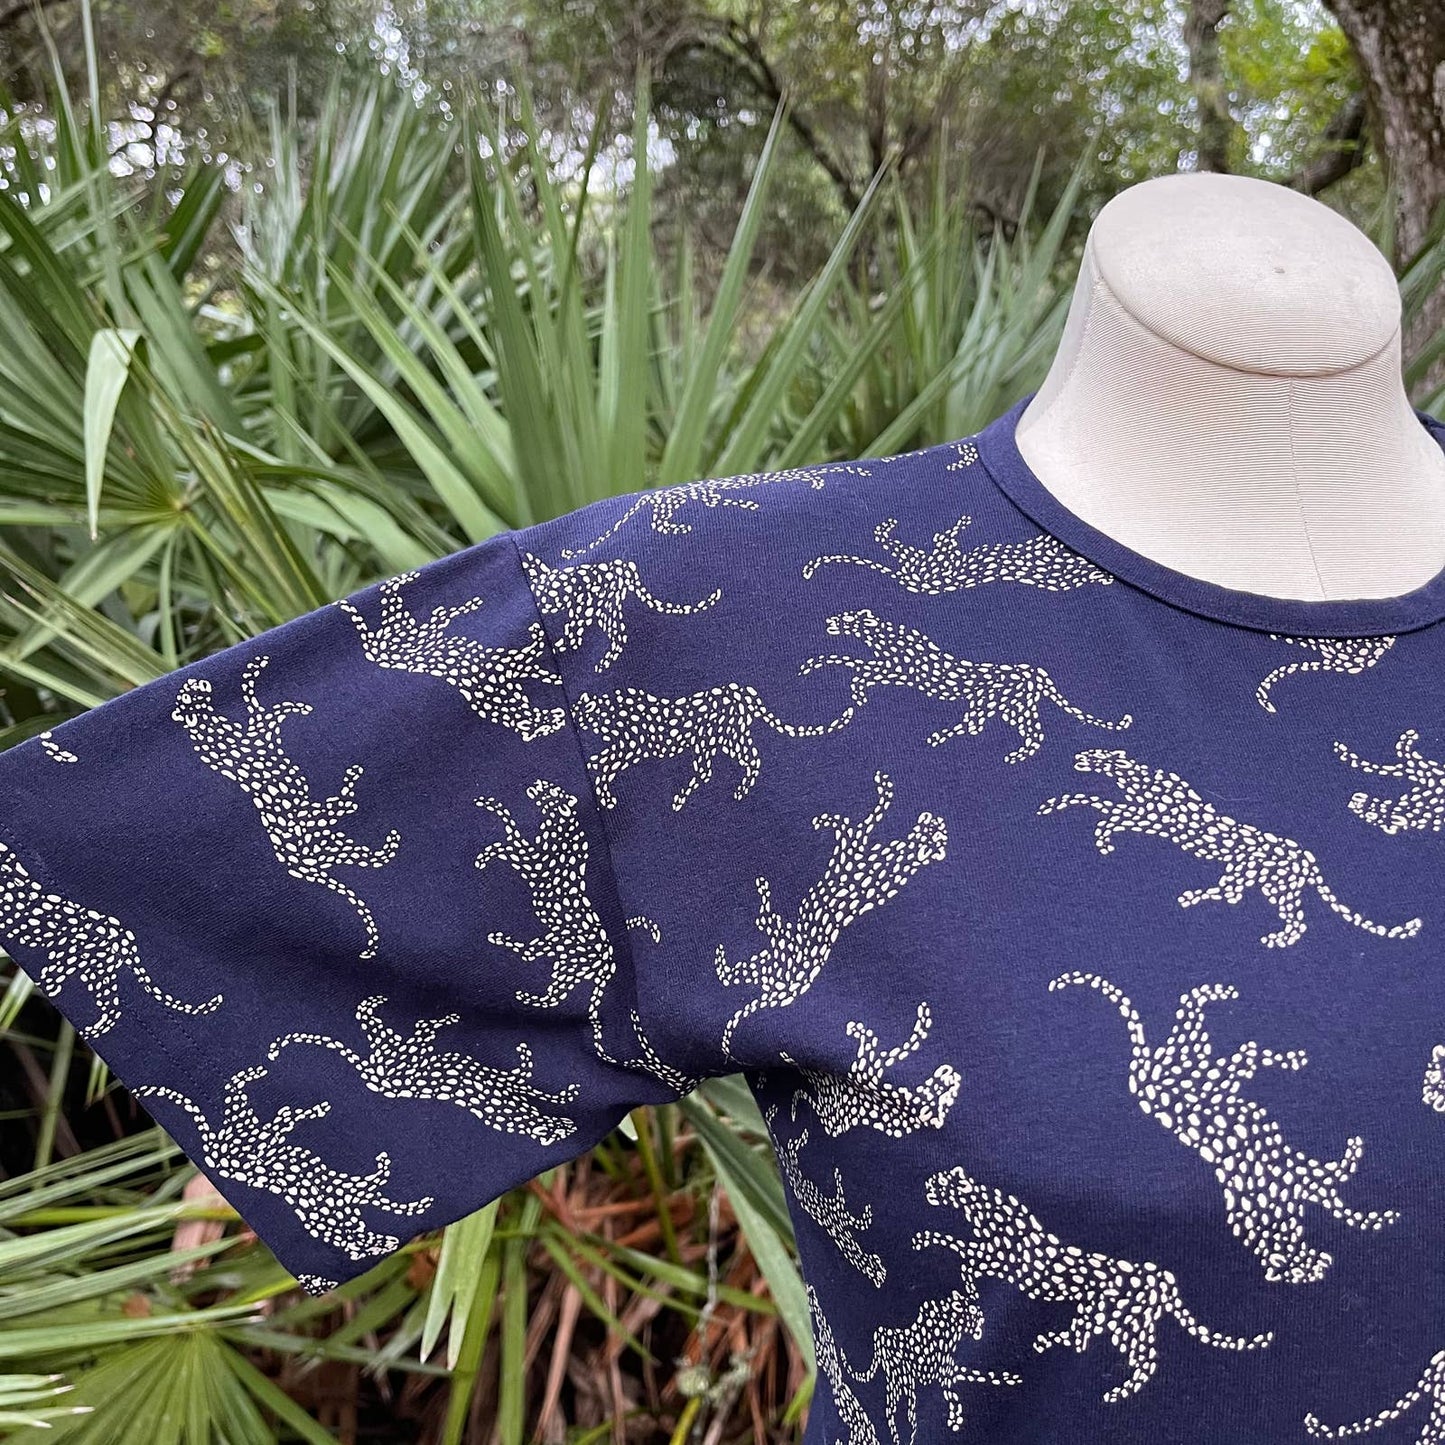 Vintage 90s Blue Leopard Cheetah Tee Shirt Cotton Kavio Designs Size M L